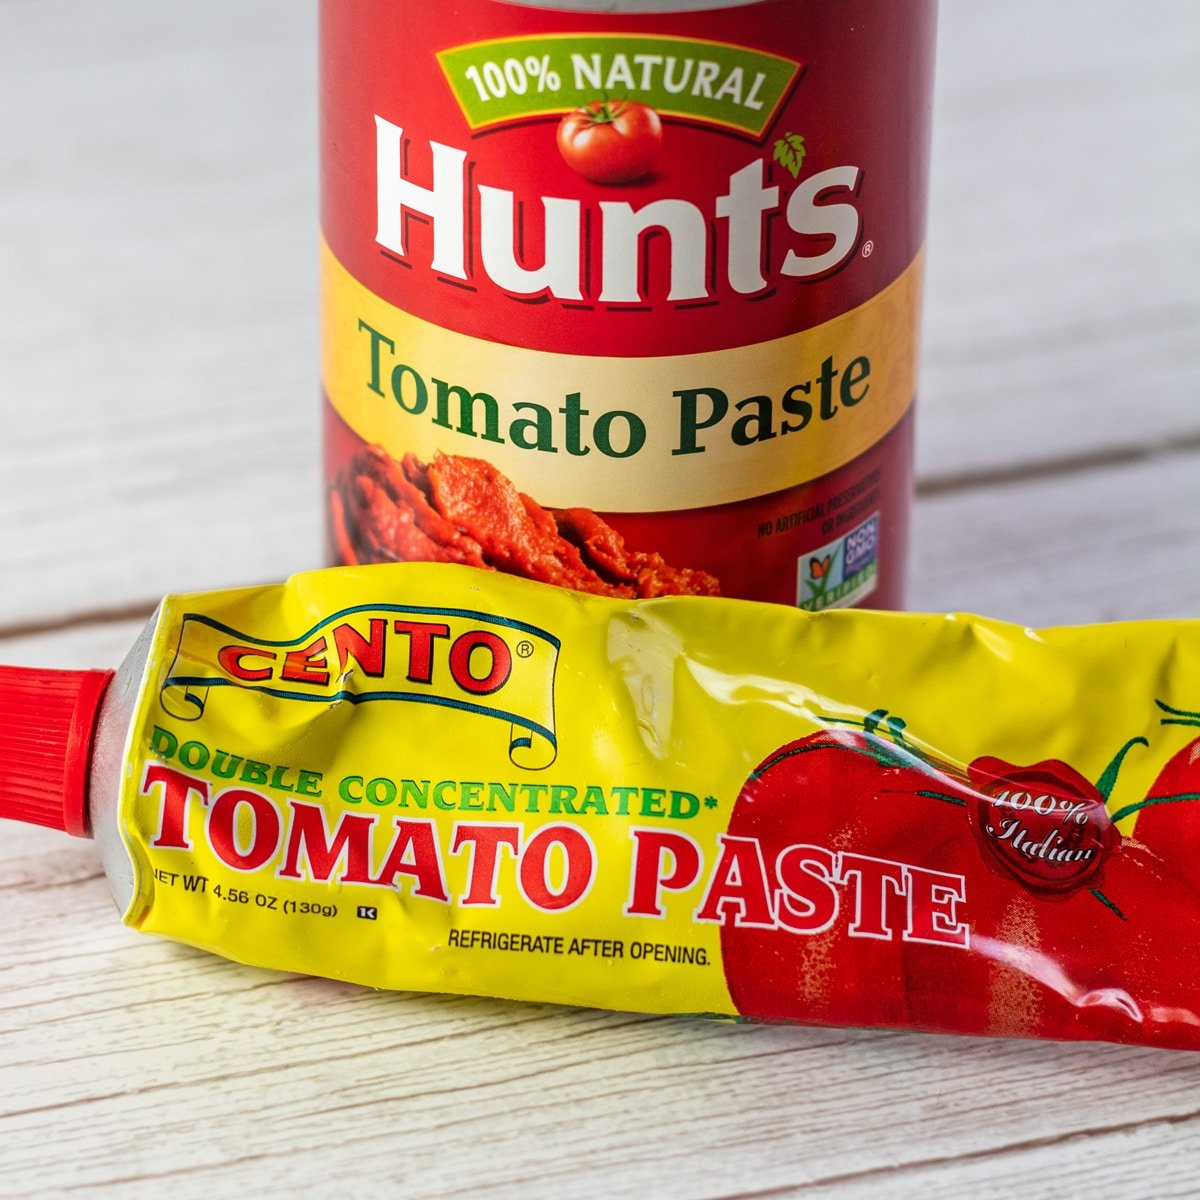 Meilleure image de substitut de pâte de tomate montrant les produits de pâte de tomate.